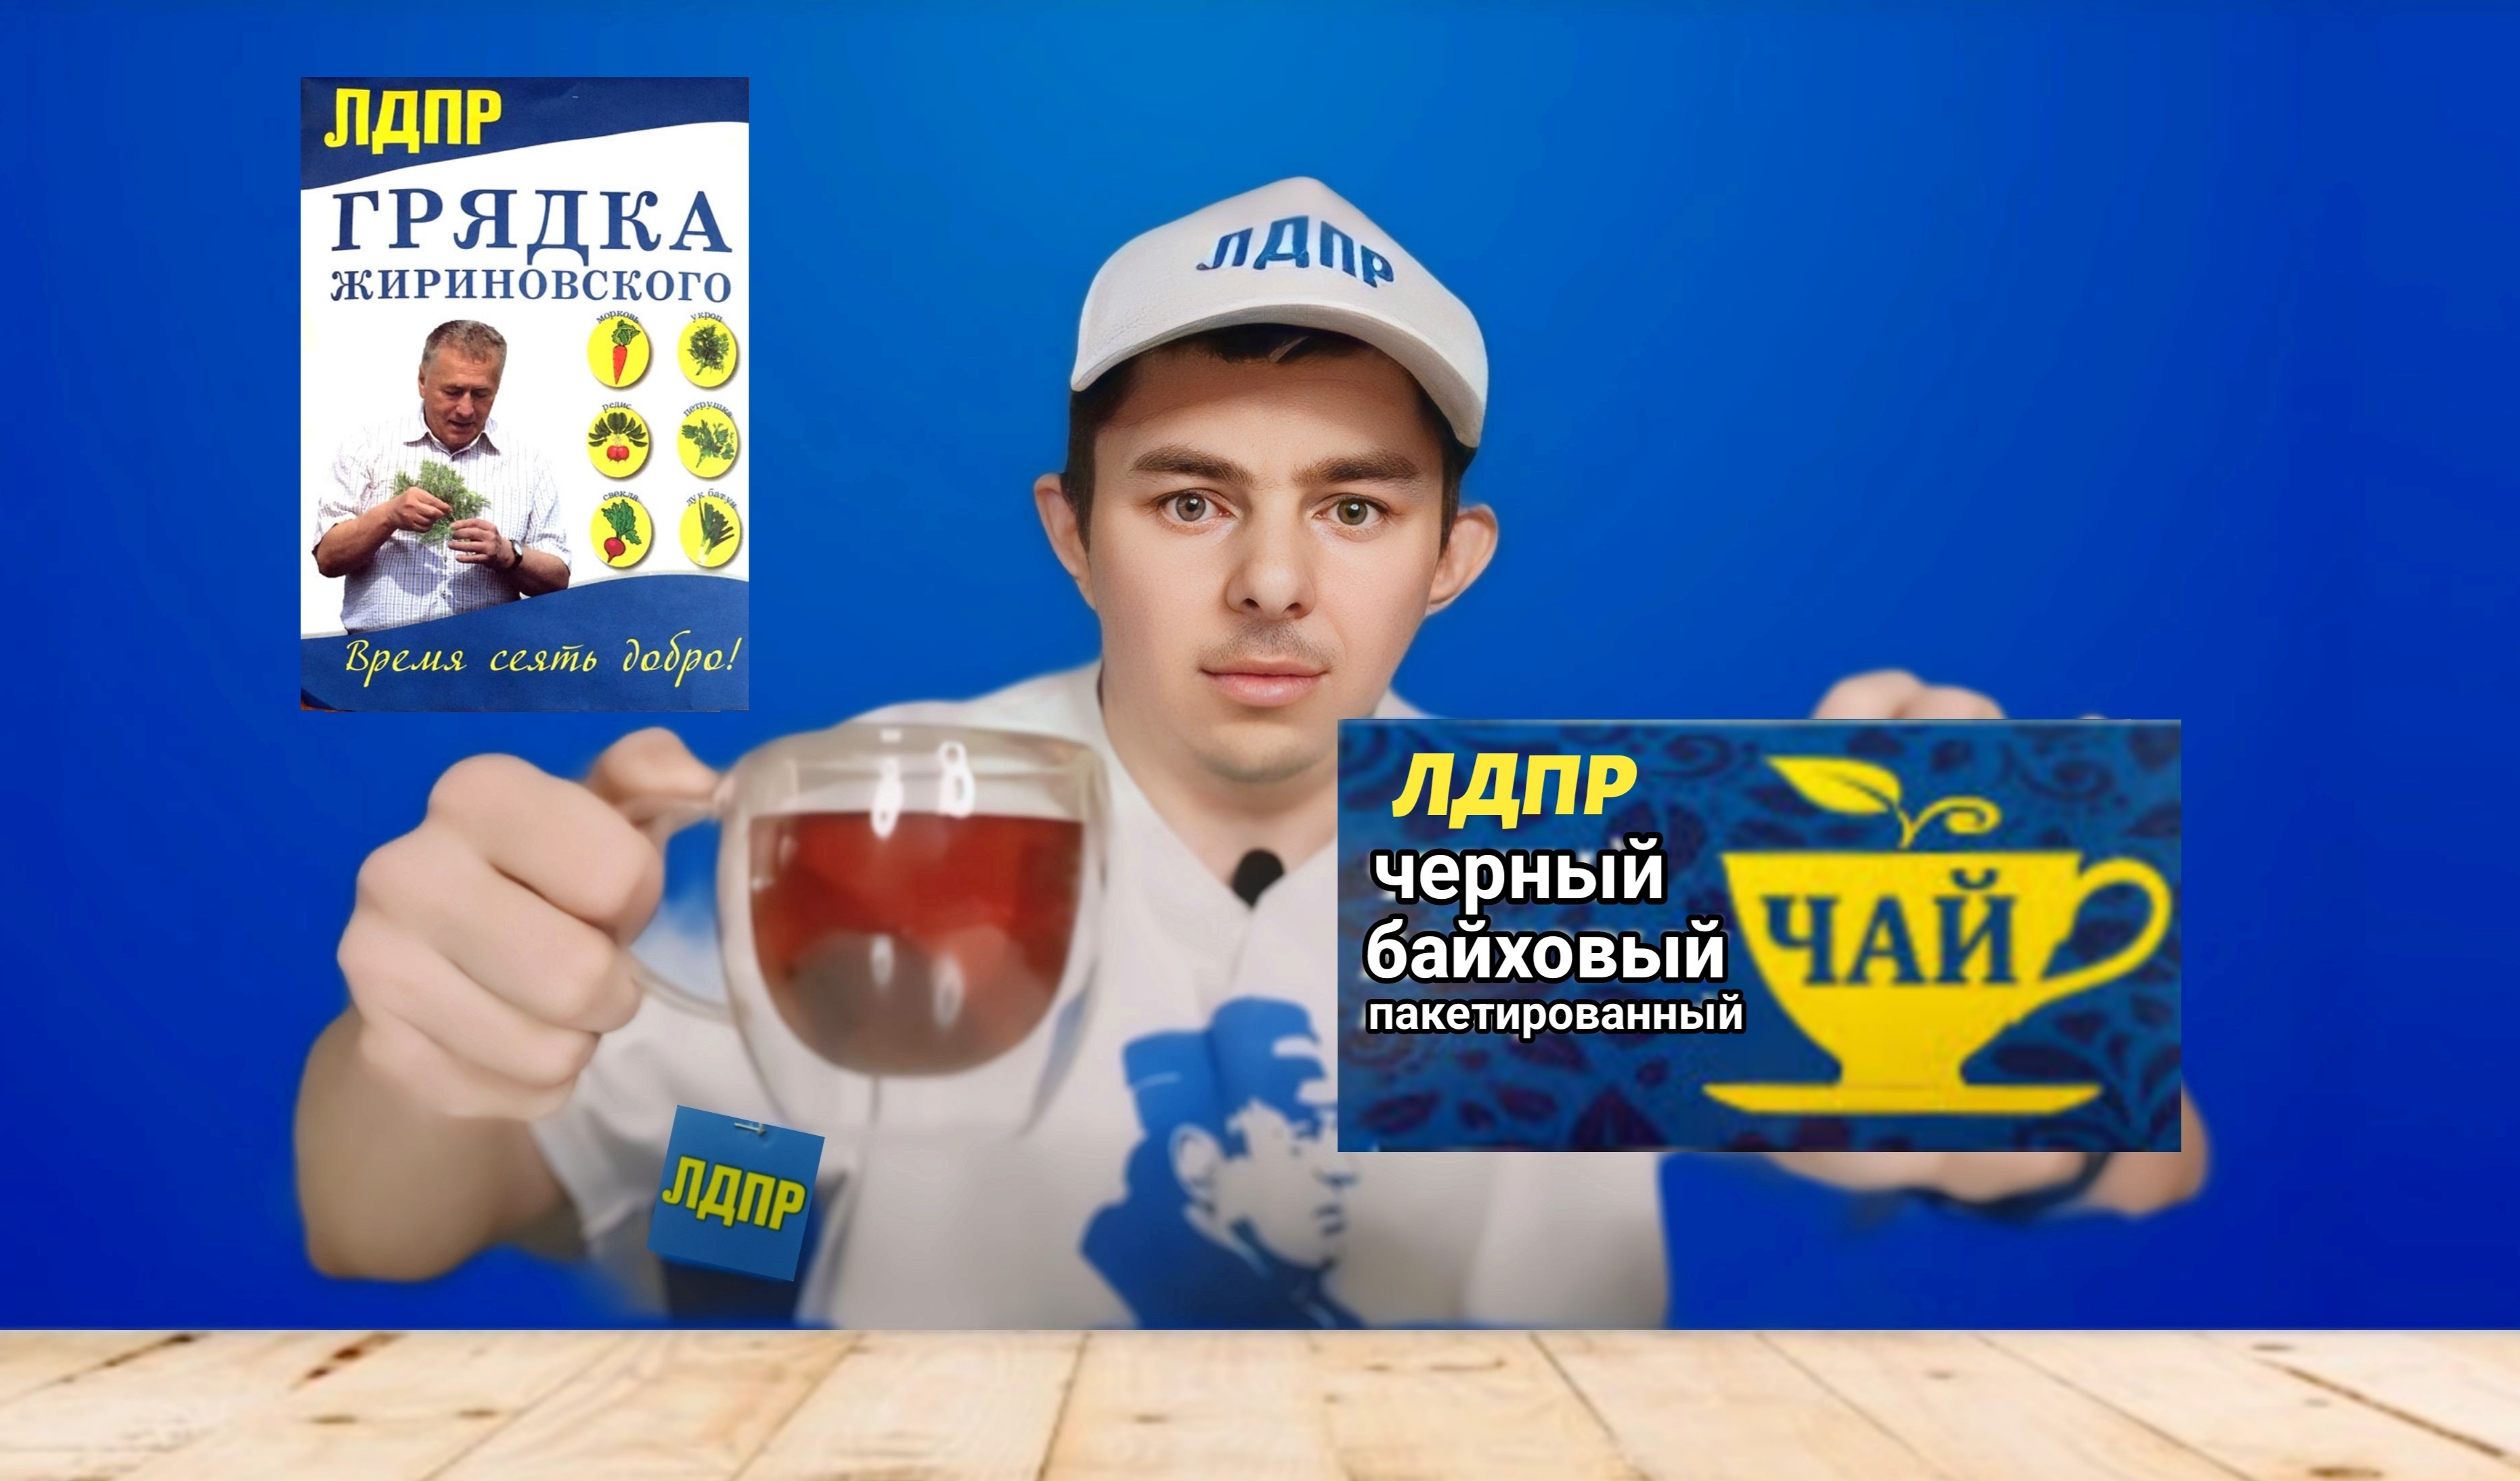 Пробую какой чай у партии ЛДПР и смотрю что входит в грядку Жириновского (о чайных пакетиках)